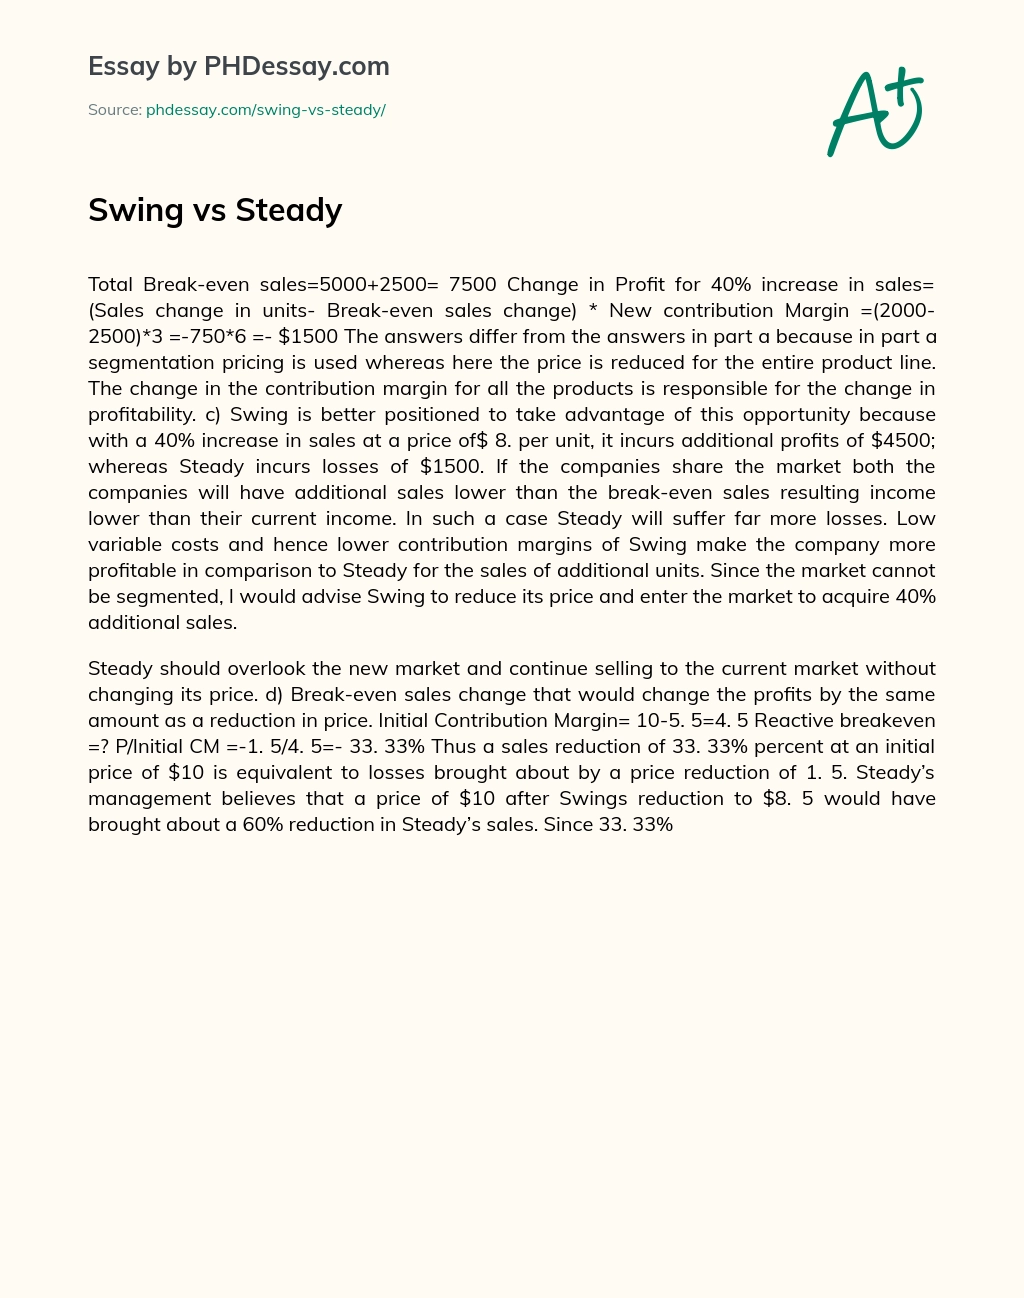 Swing vs Steady essay